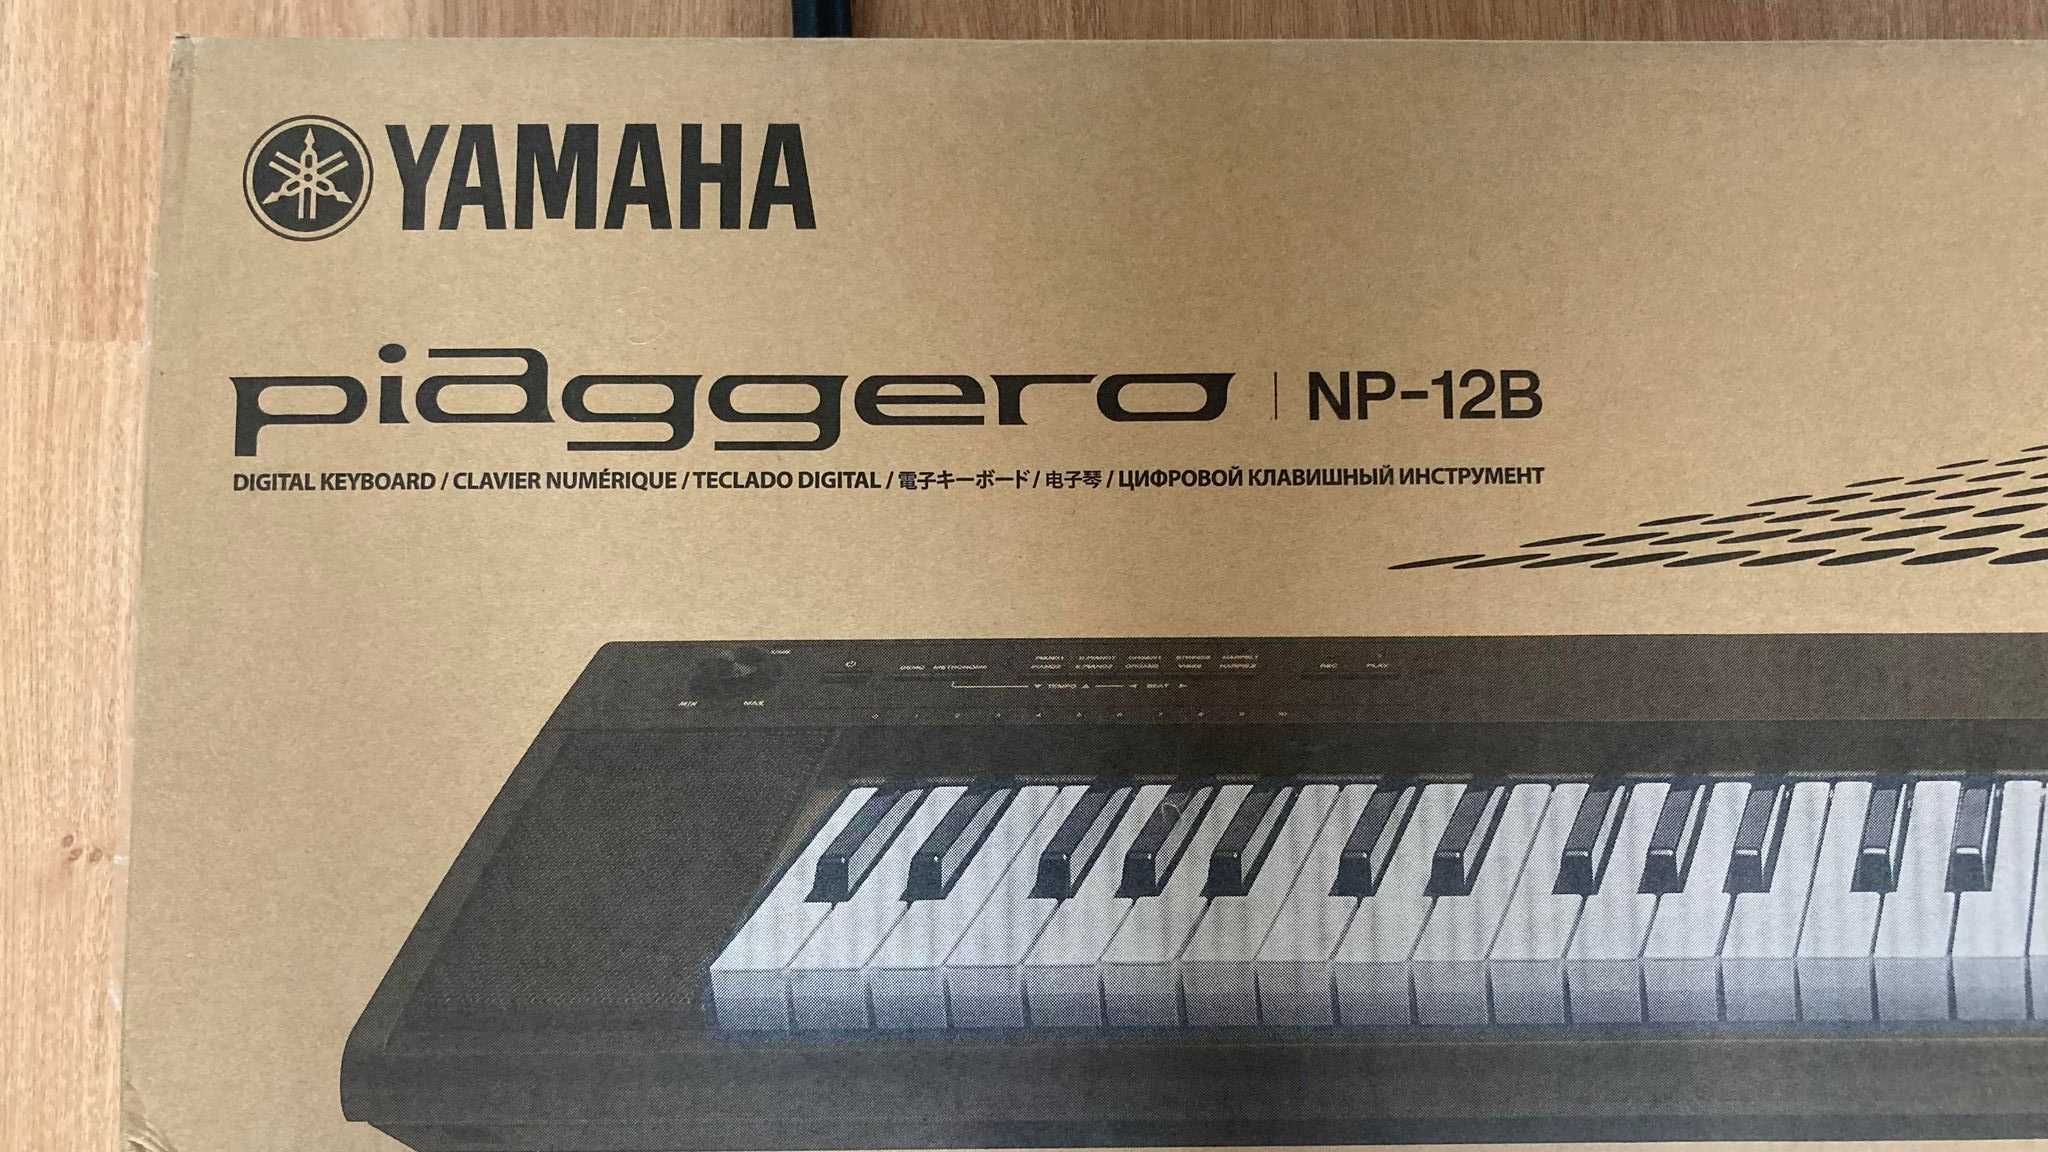 Pian digital Yamaha Piaggero NP-12B